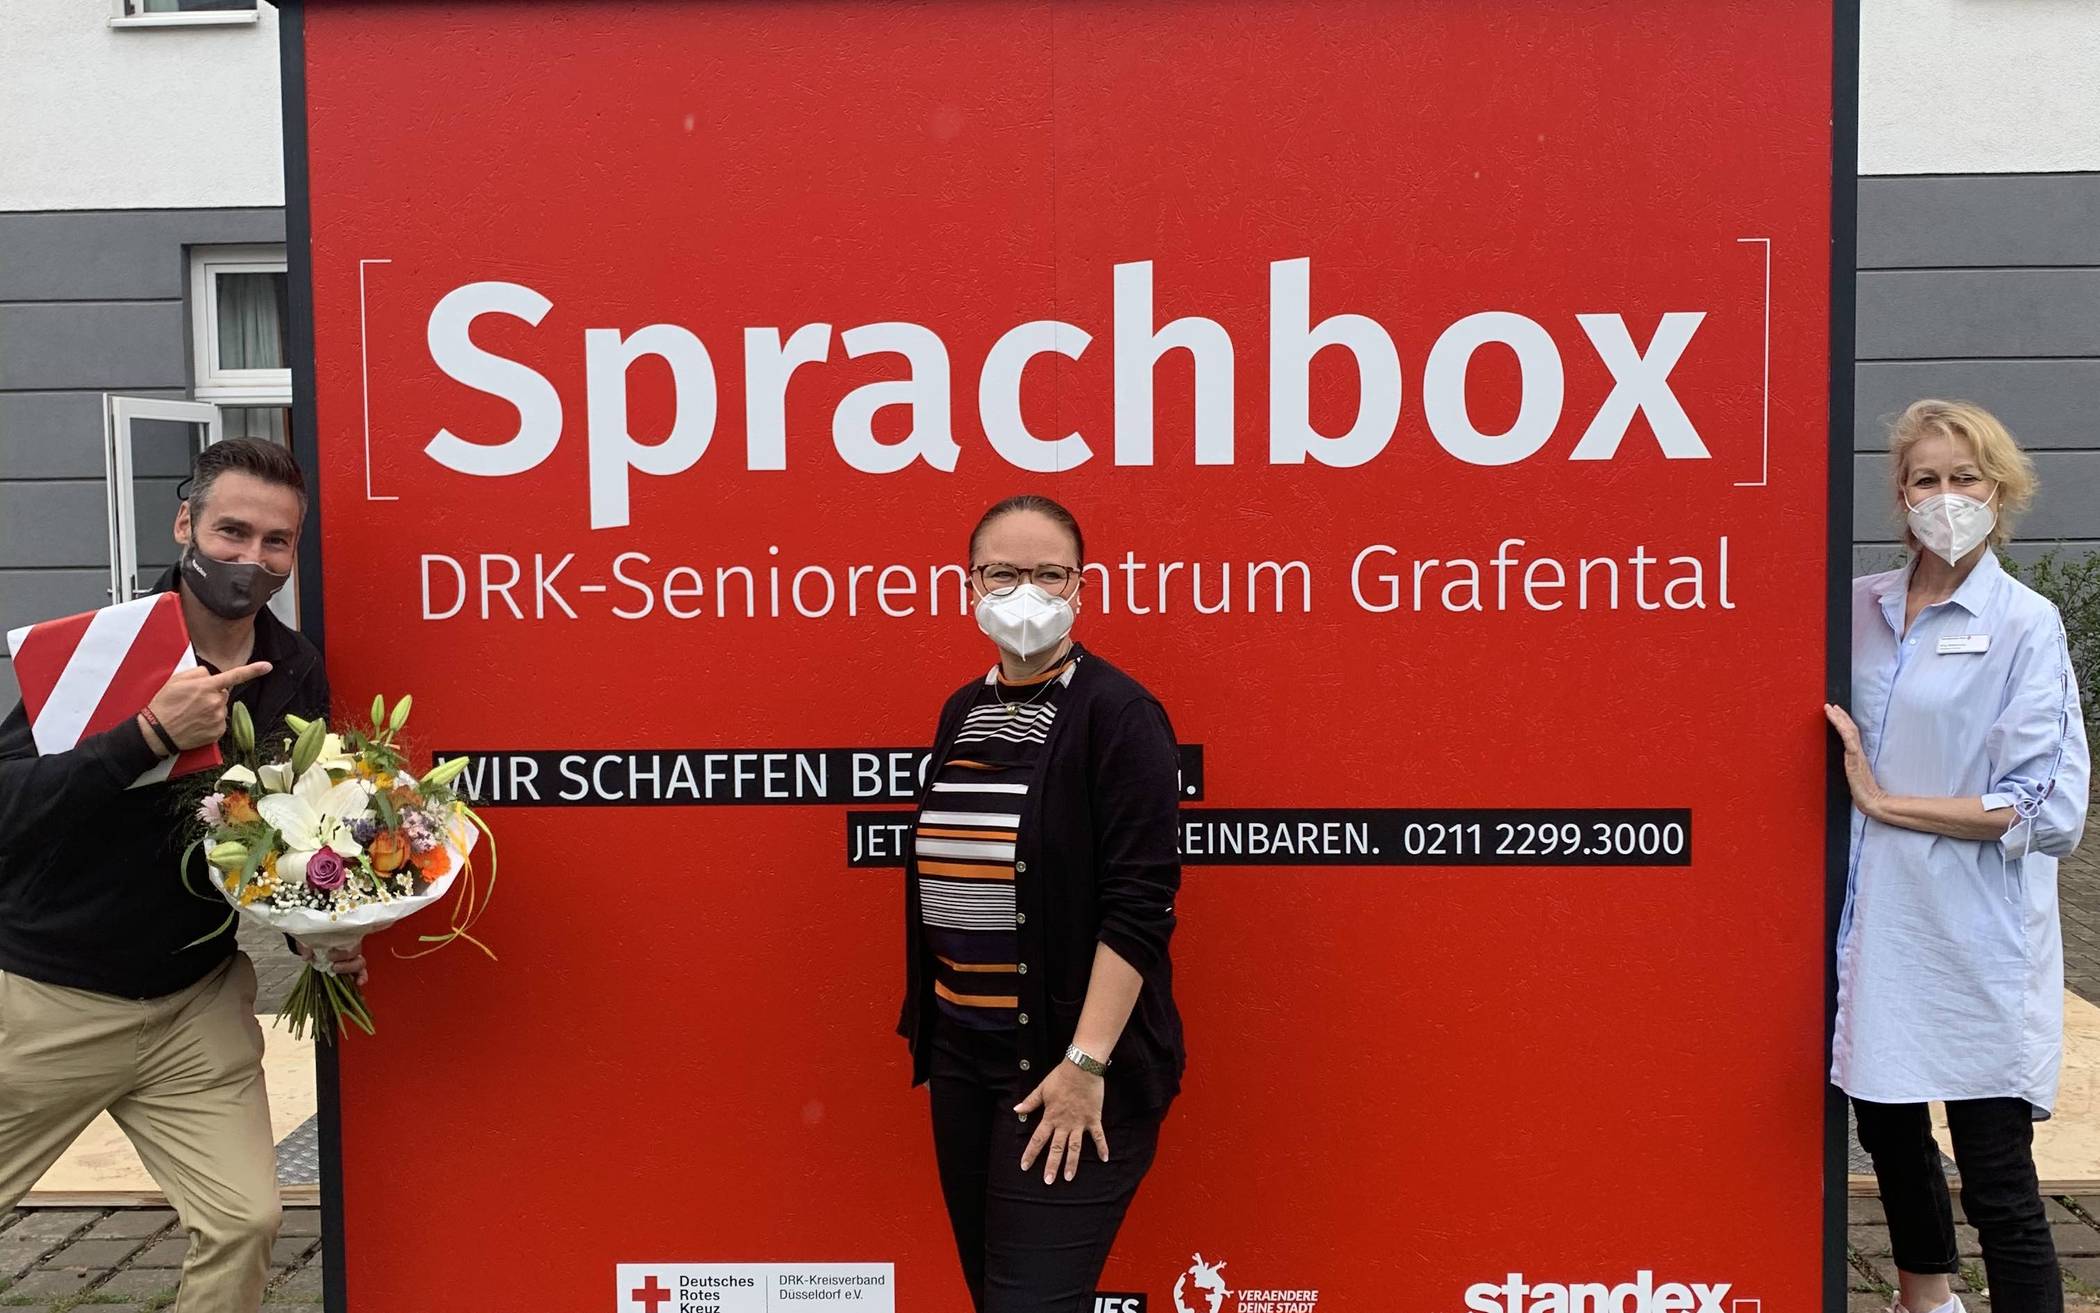  Sascha Söhler (CEO Standex GmbH) mit Andrea Patt (Einrichtungsleiterin DRK-Seniorenheim Grafental) und Betreuerin. 